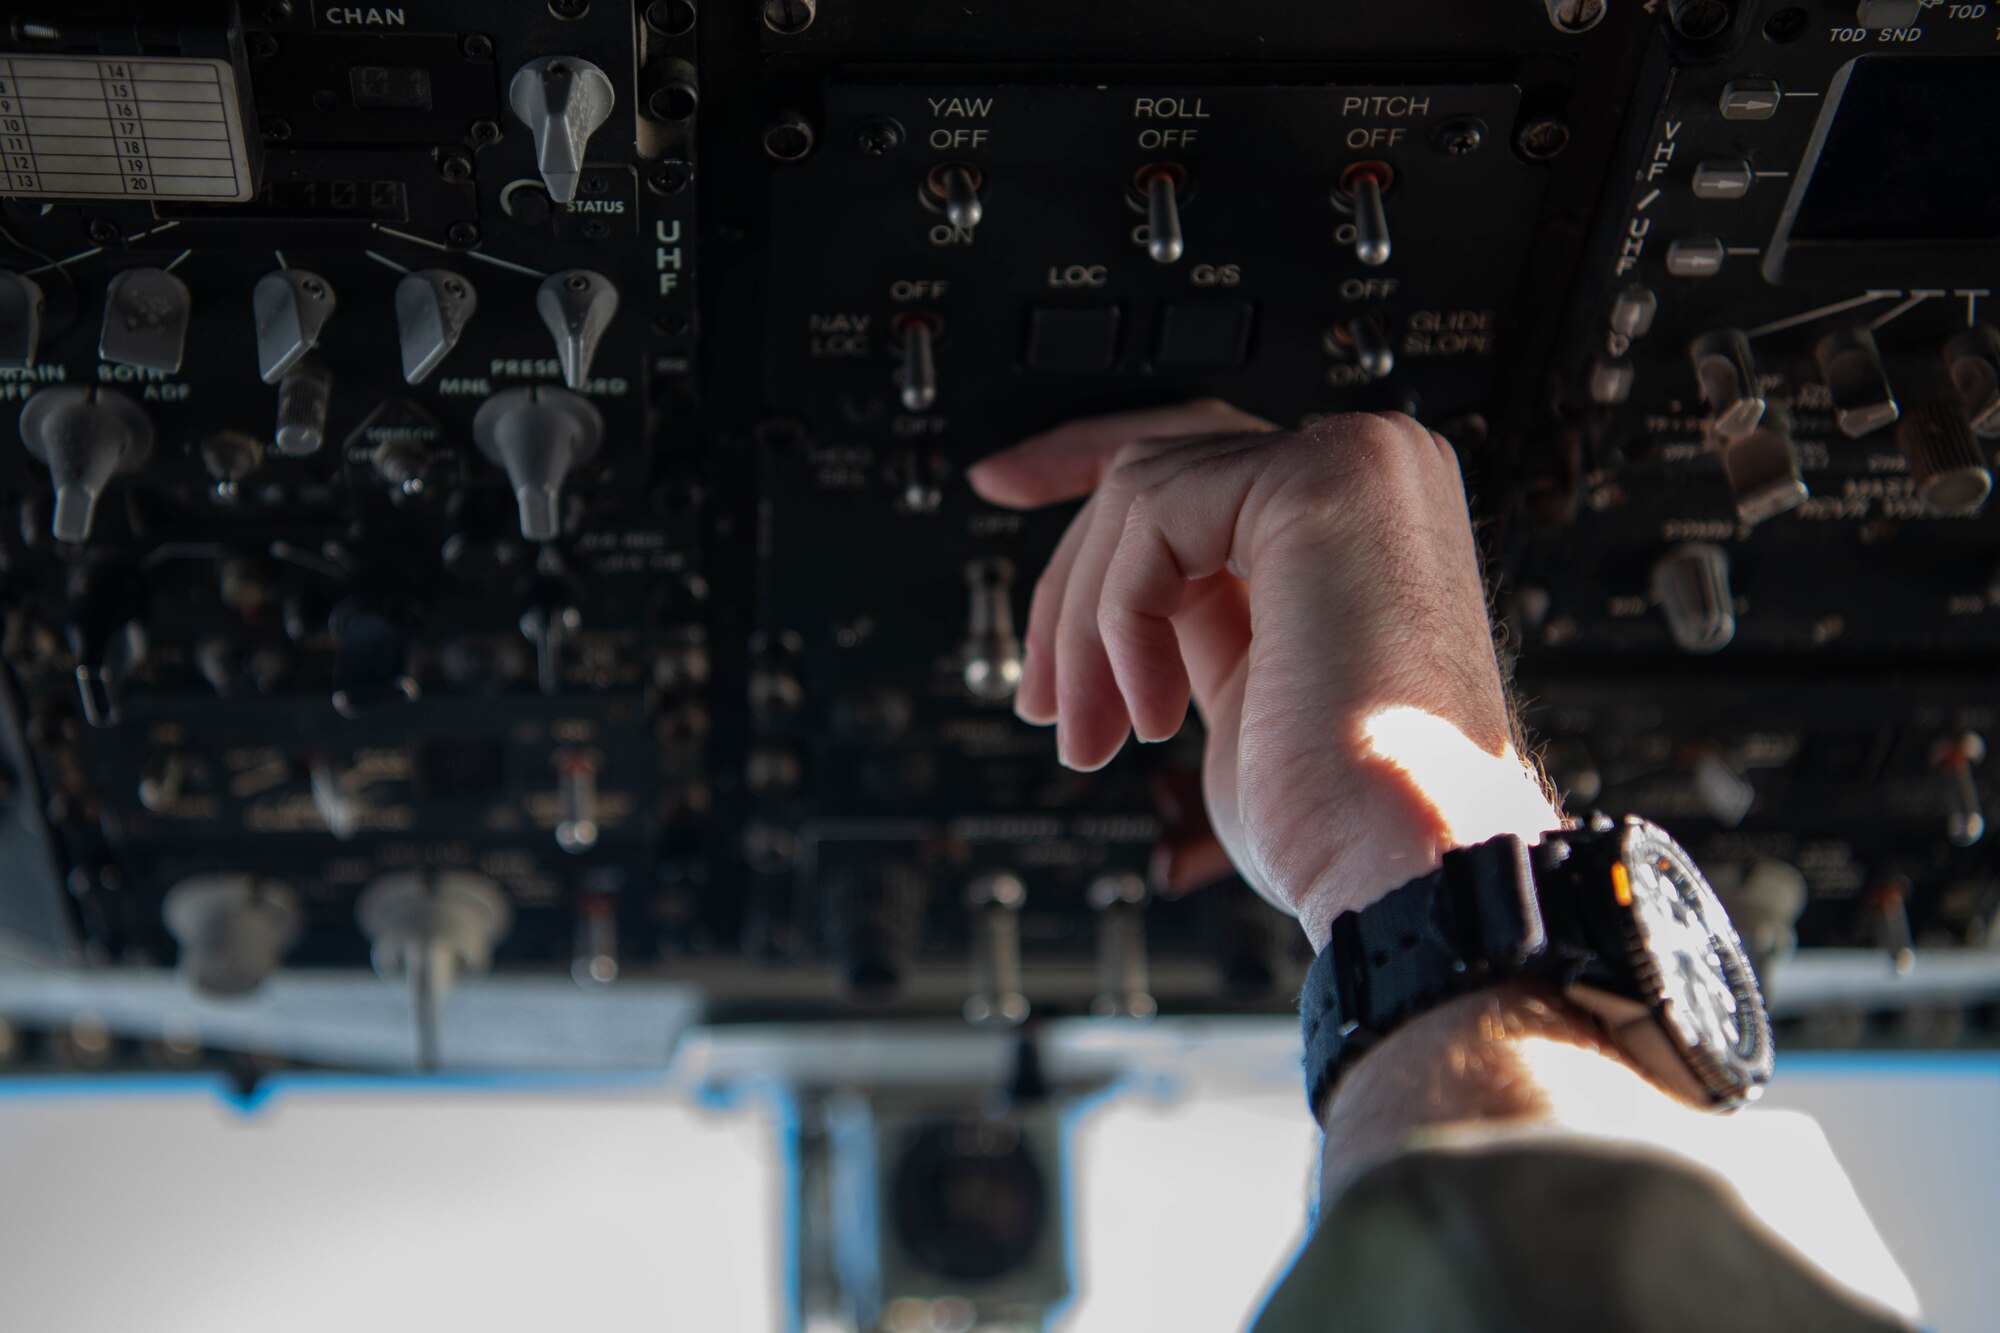 An Airman flips an aircraft's switches.